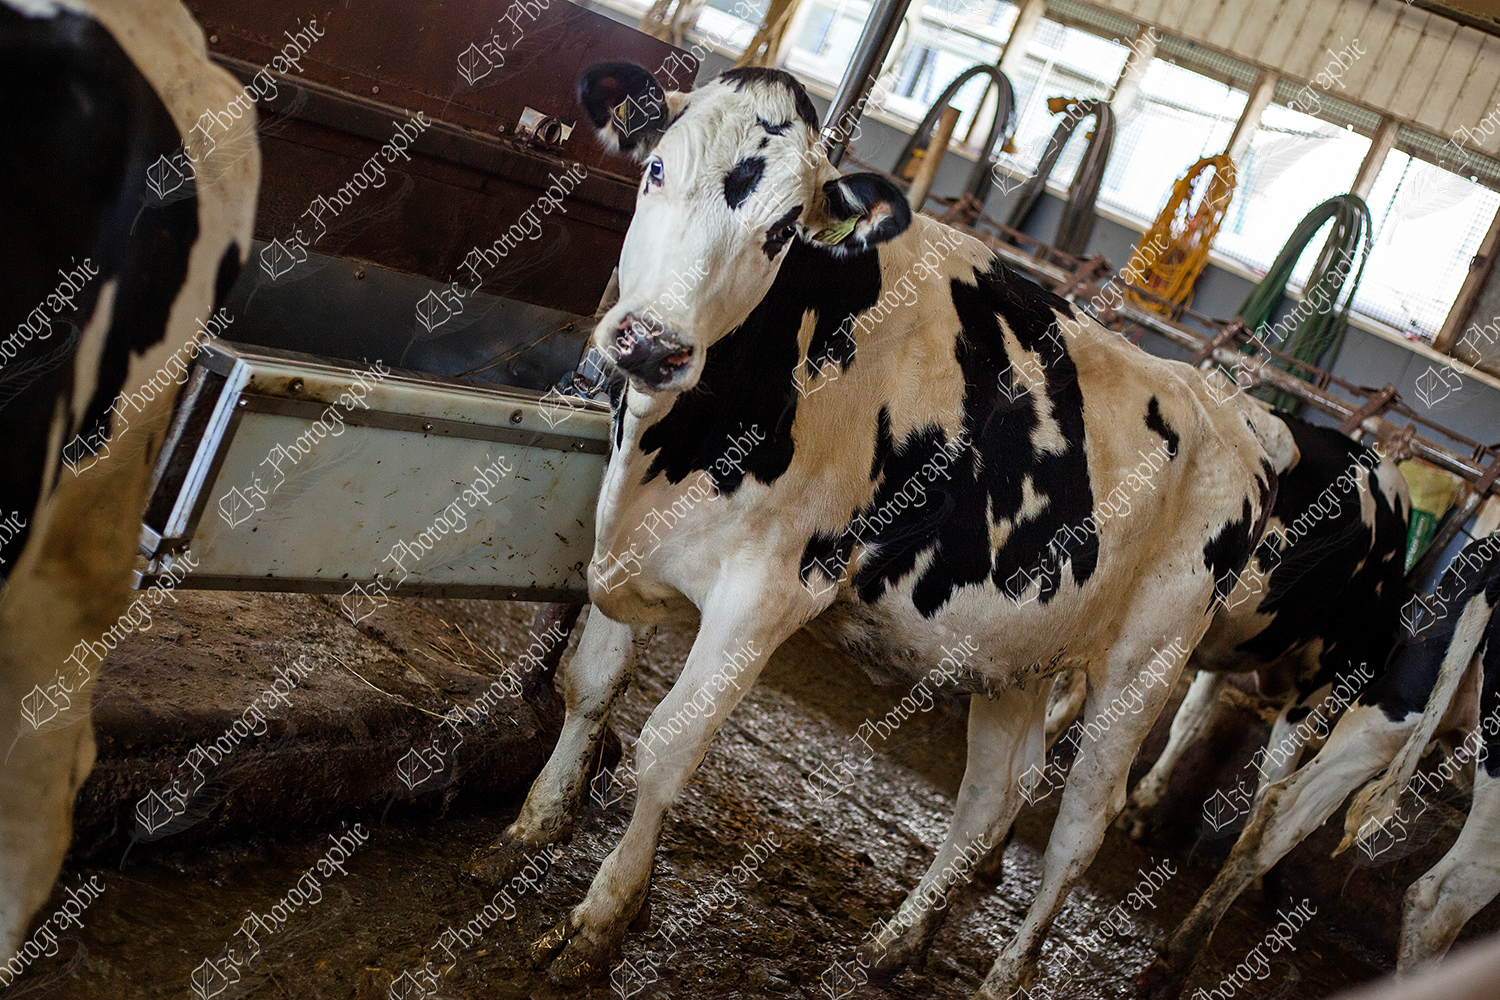 elze_photo_8546_taure_holstein_stabulation_cow_dairy_farm